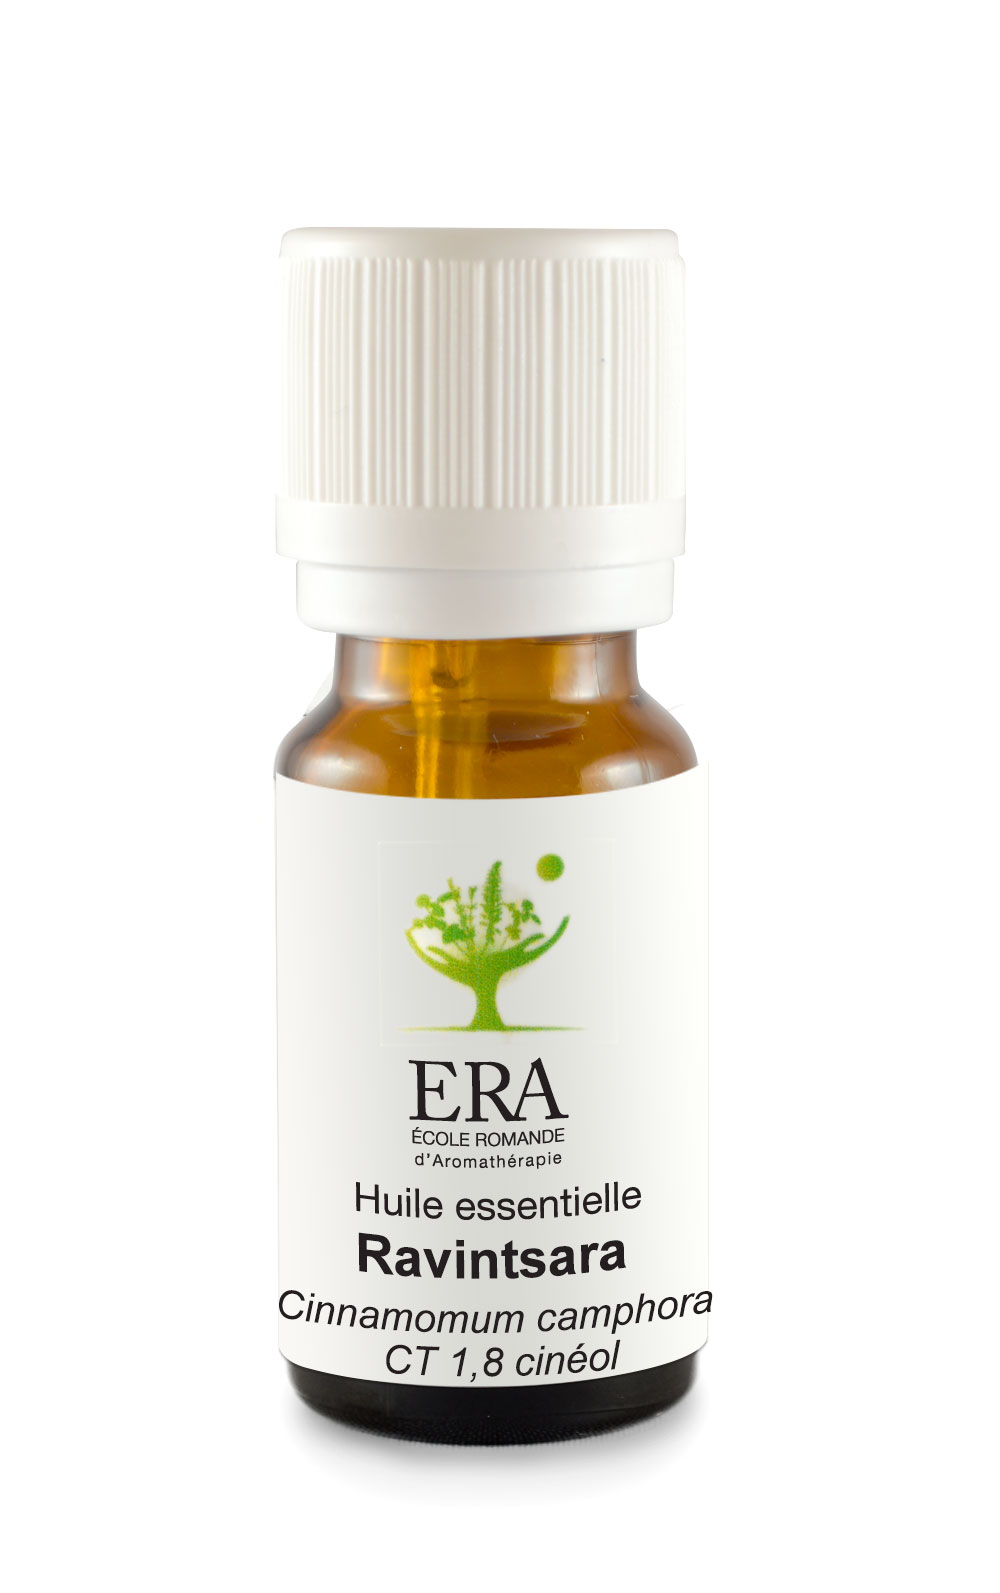 Ravintsara - Cinnamomum camphora CT 1,8 cinéol - Lauracées